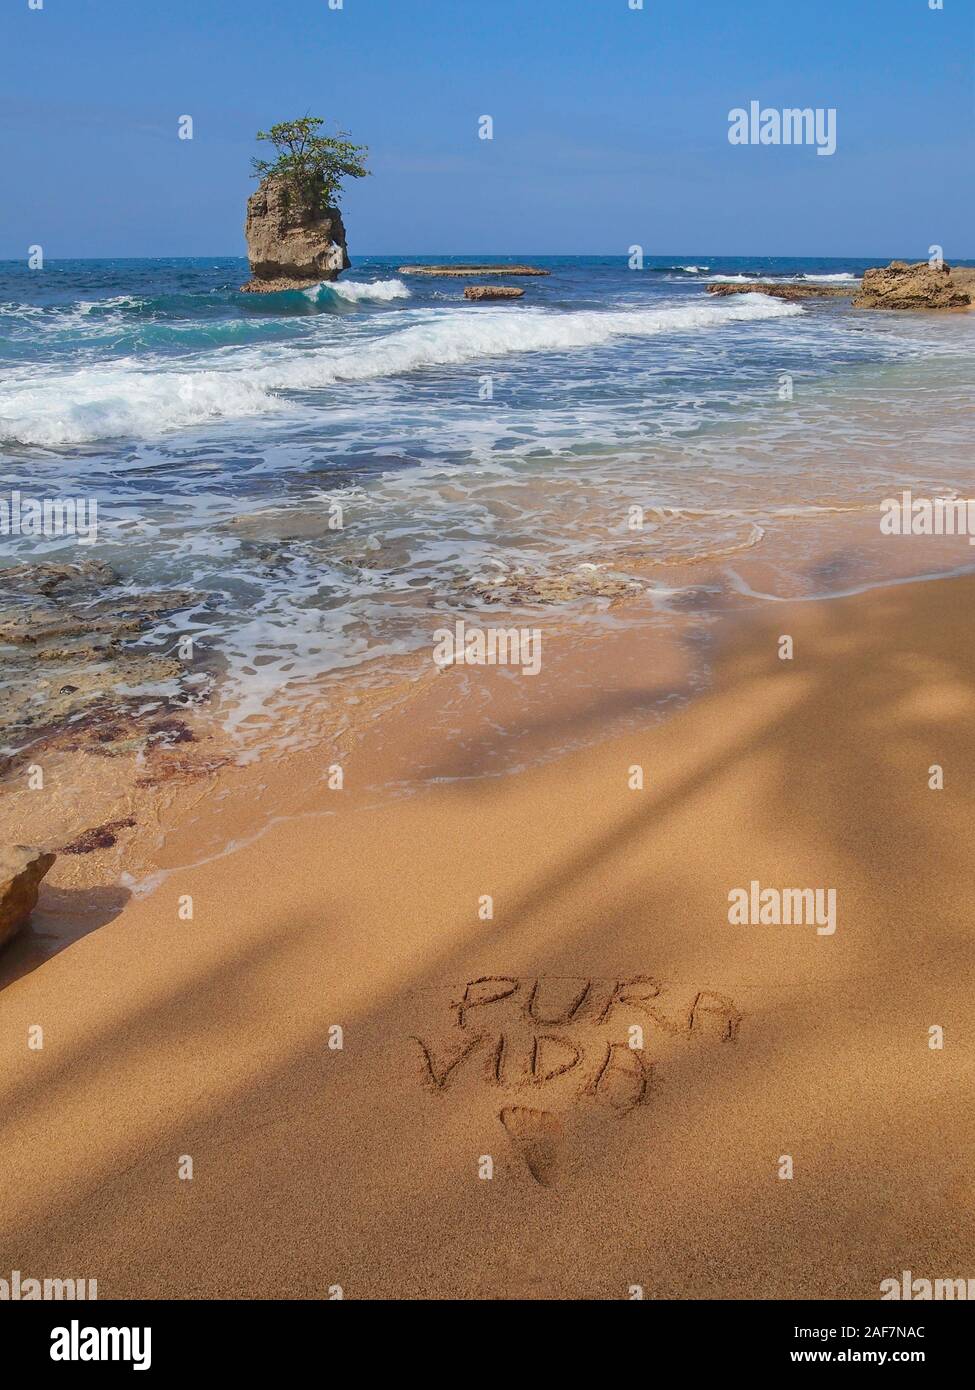 Tropischen Meer mit einer felsigen Insel und die Worte "PURA VIDA" in den Sand geschrieben, Karibikküste von Costa Rica, Mittelamerika Stockfoto